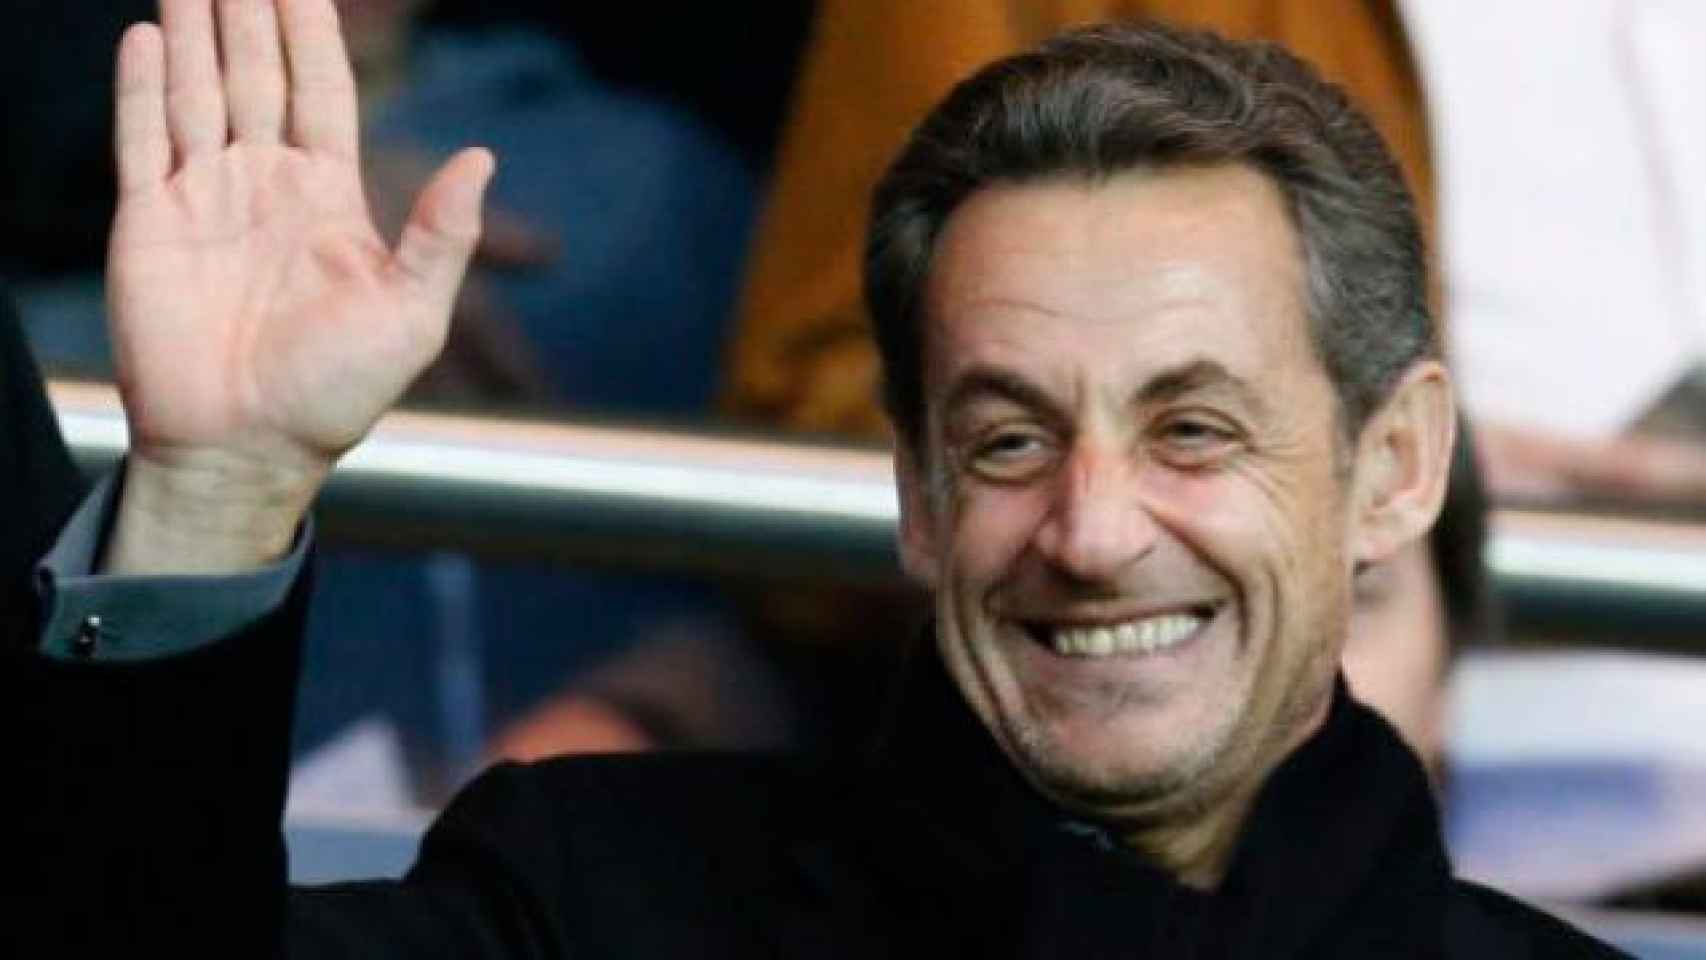 El expresidente de Francia, Nicolas Sarkozy, en una imagen de archivo / CG